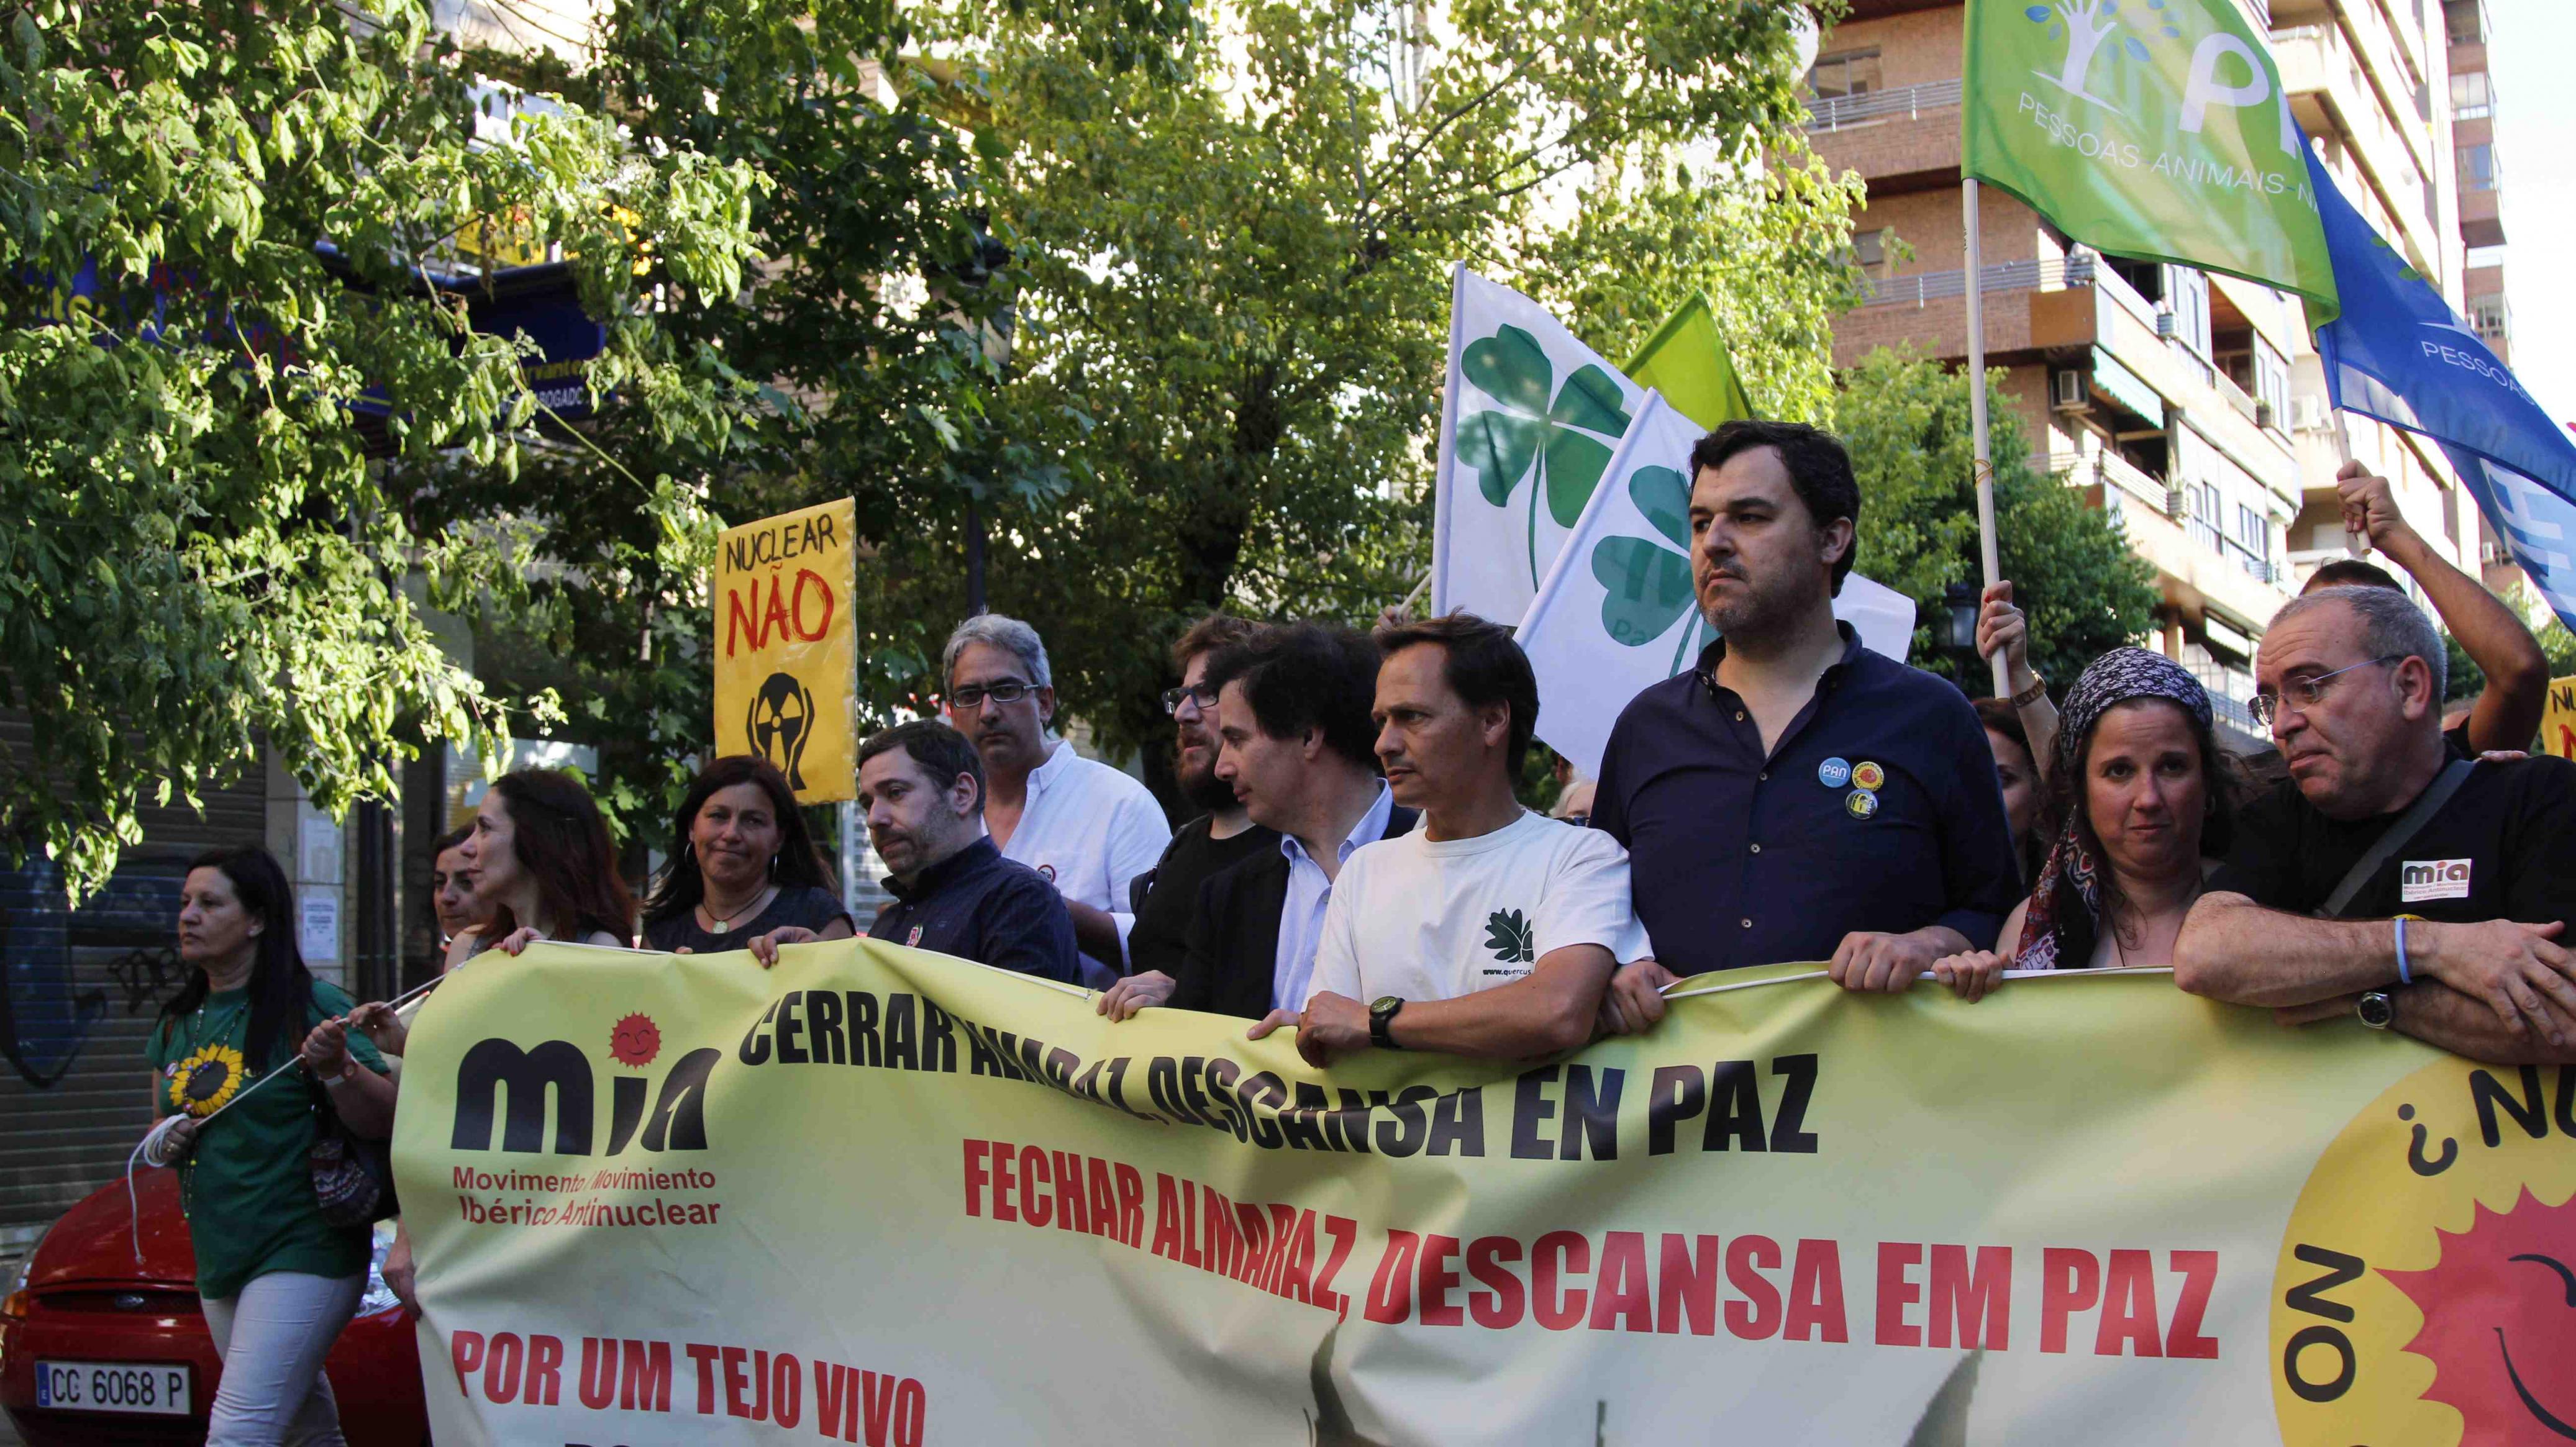 Manifestación organizada por la asociación Quercus en contra del ATI y la central de Almaraz. Lisboa, 2016 / Jorge Ribeiro Infante